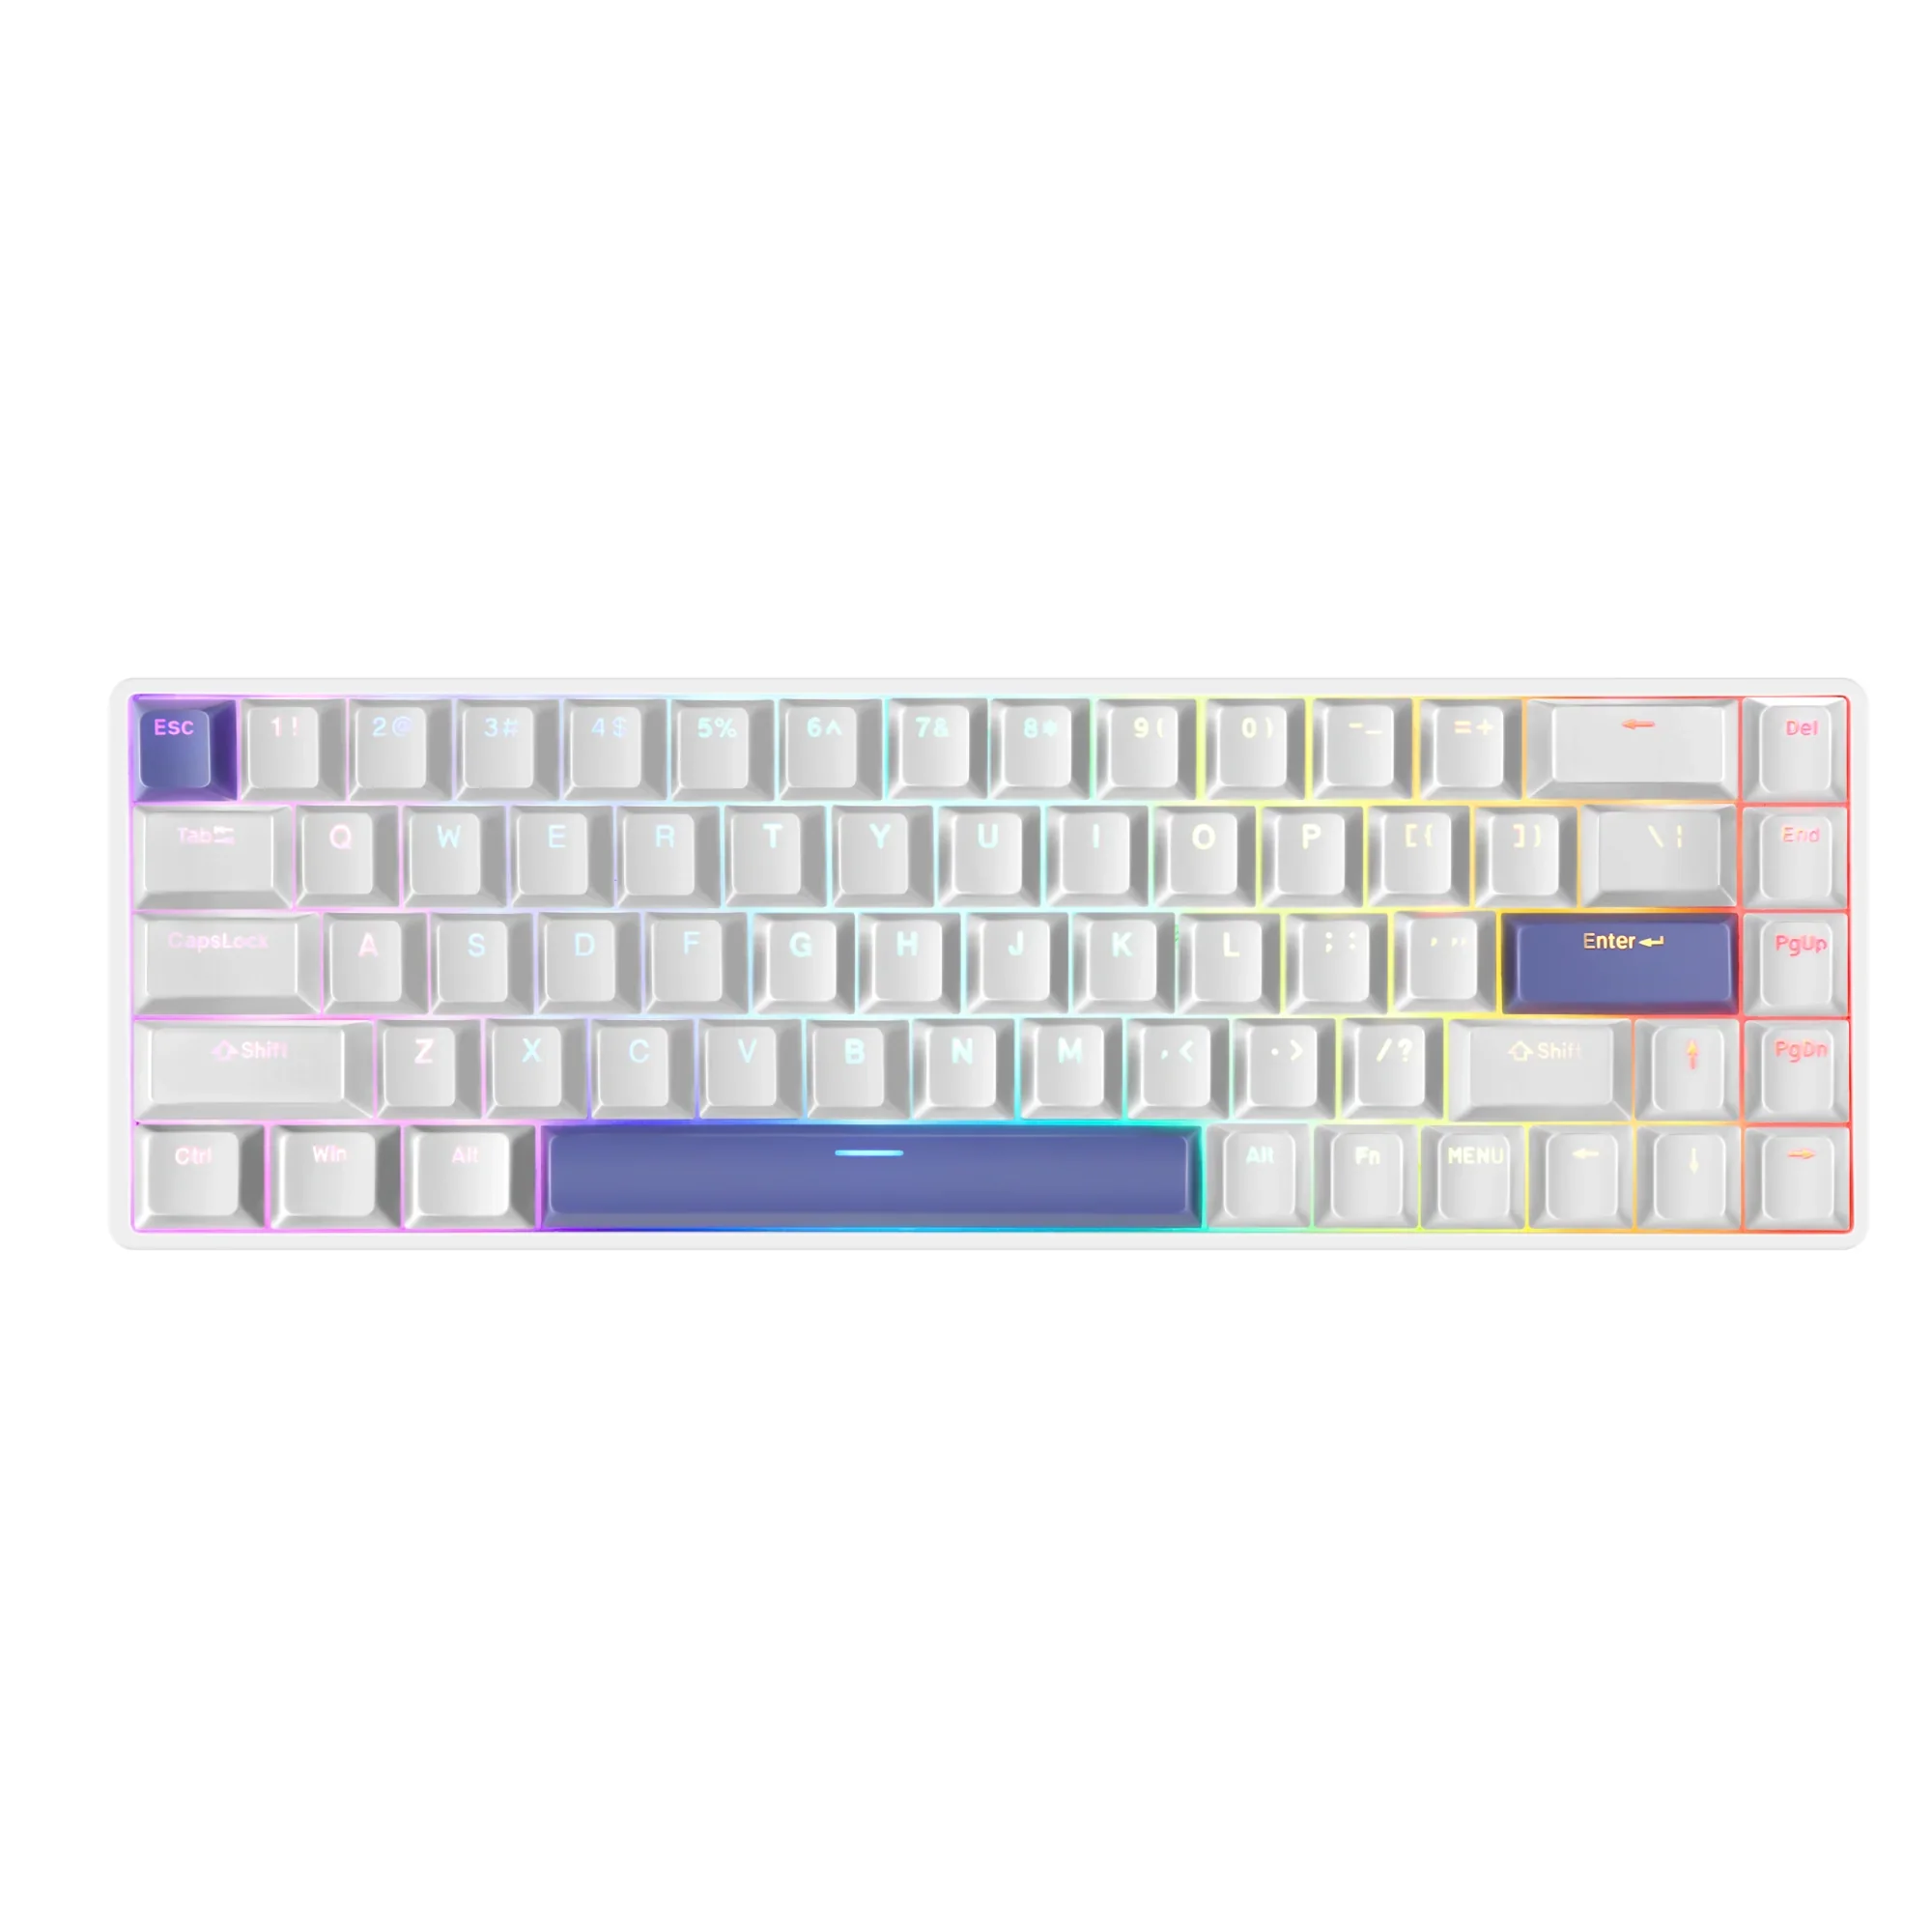 GMK+ White OEM Full Mechanical Keyboard